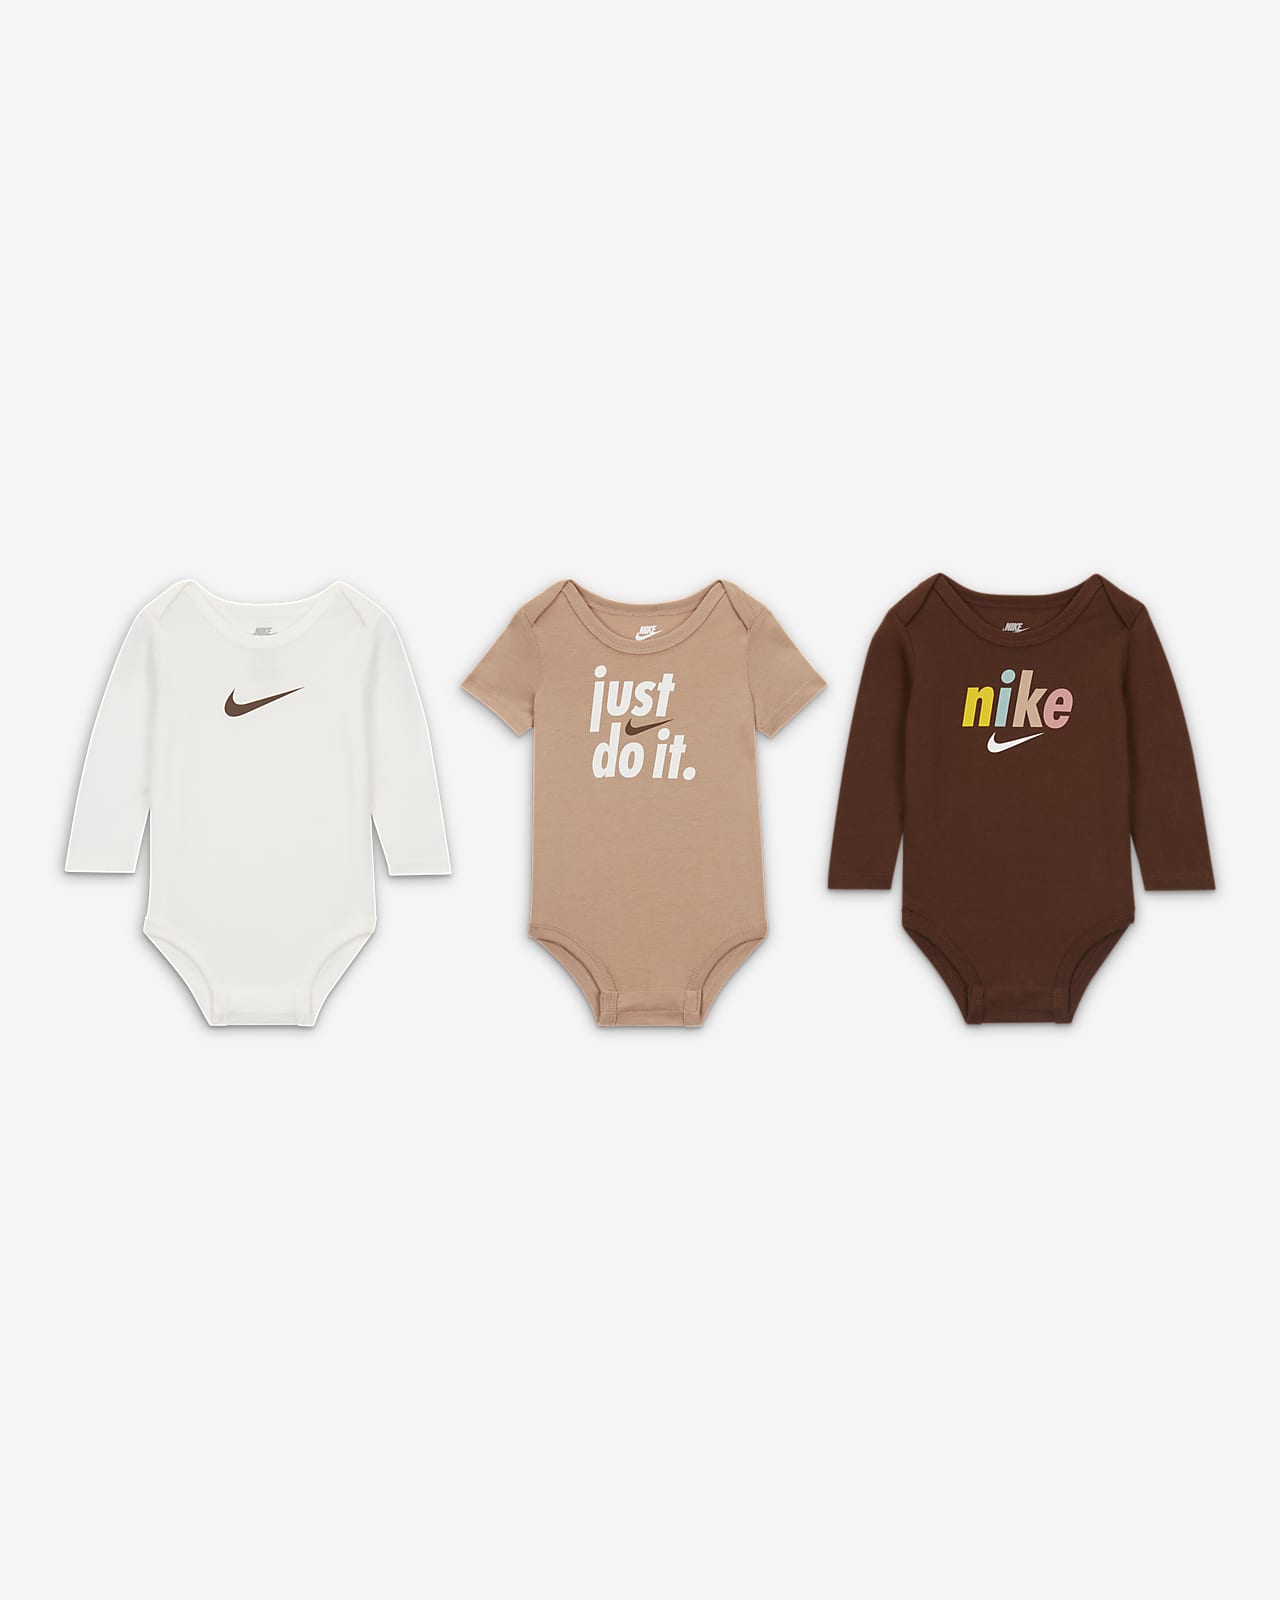 Nike E1D1 3-Pack Bodysuits Baby Bodysuit Pack.